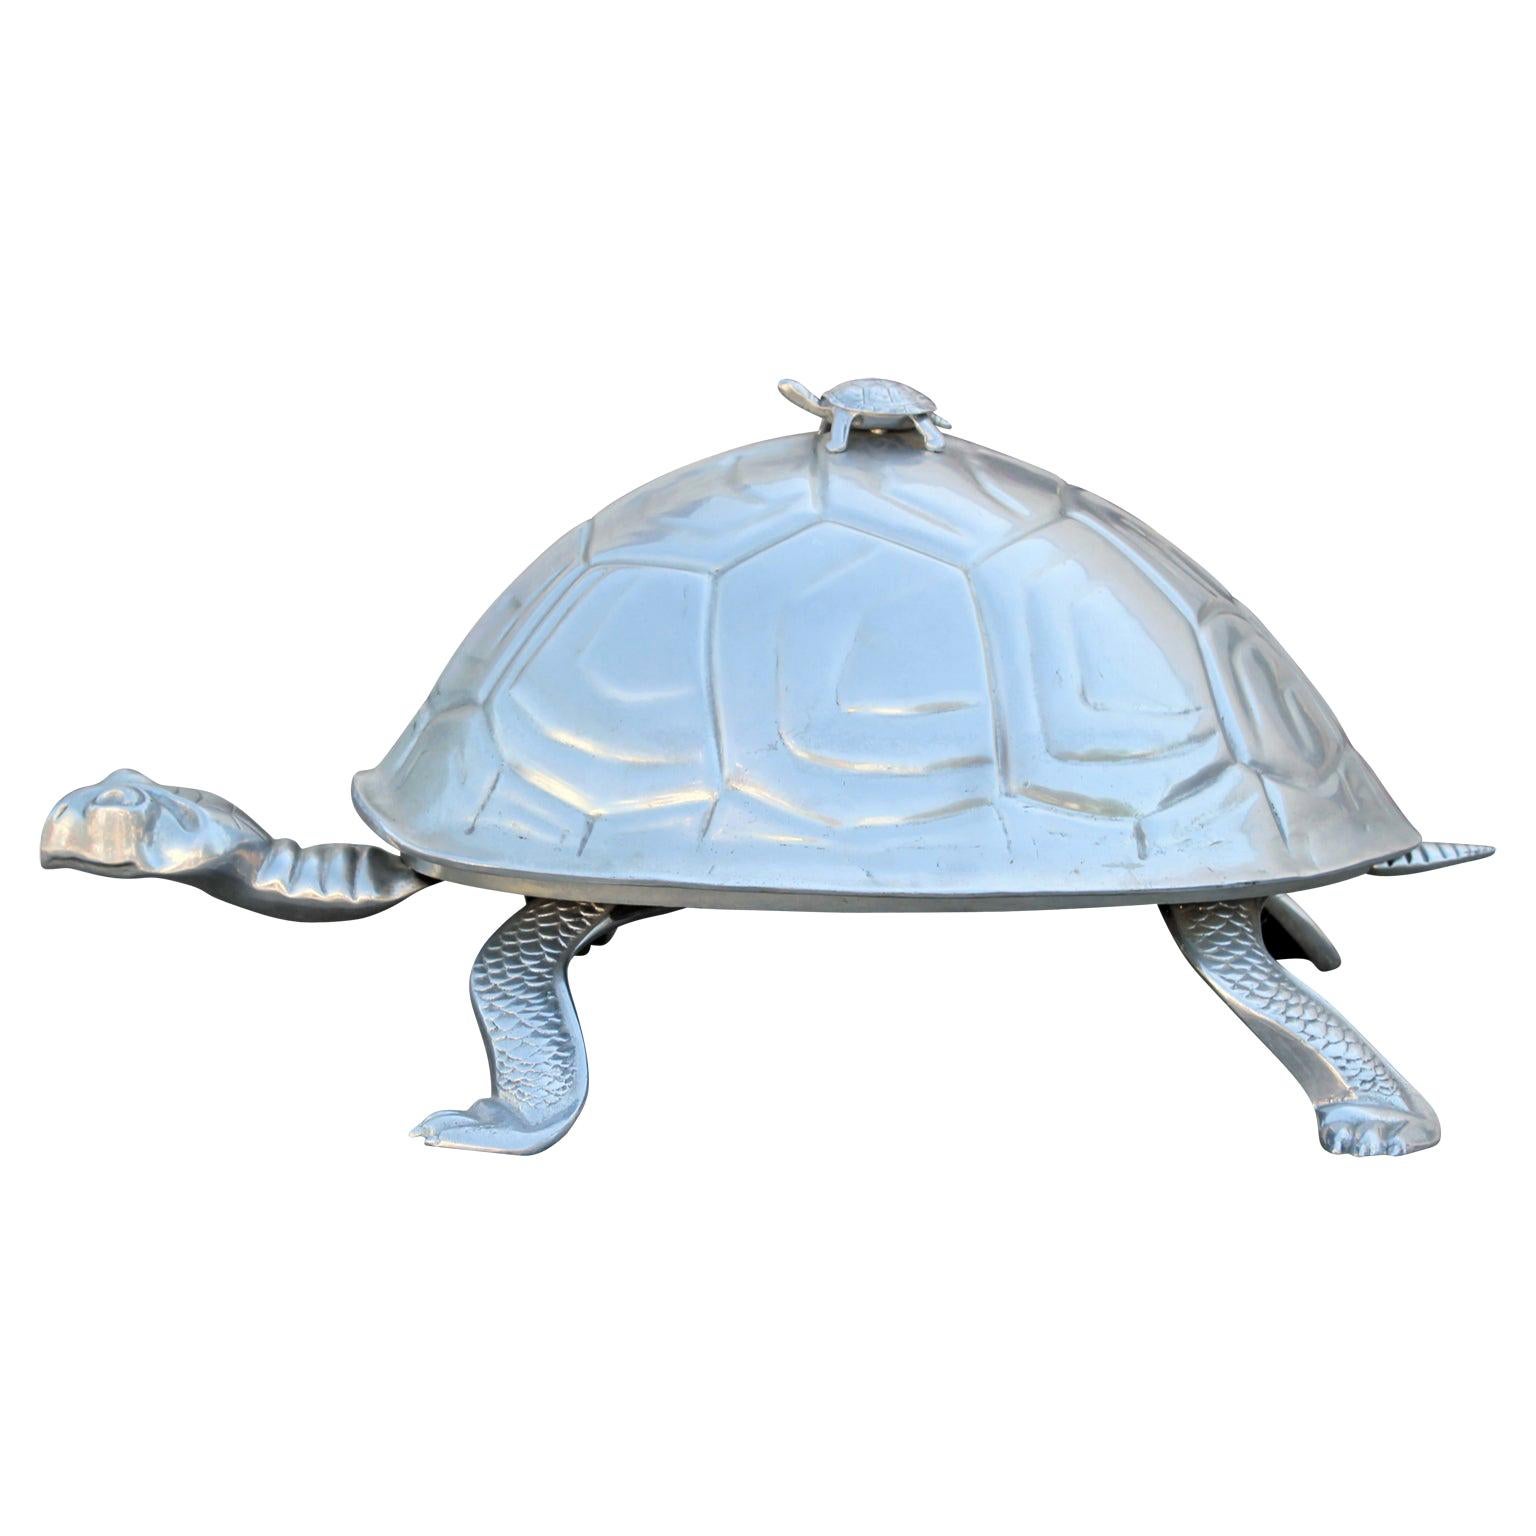 Monumental Arthur Court Silver Aluminum Turtle / Tortoise Serving Centerpiece